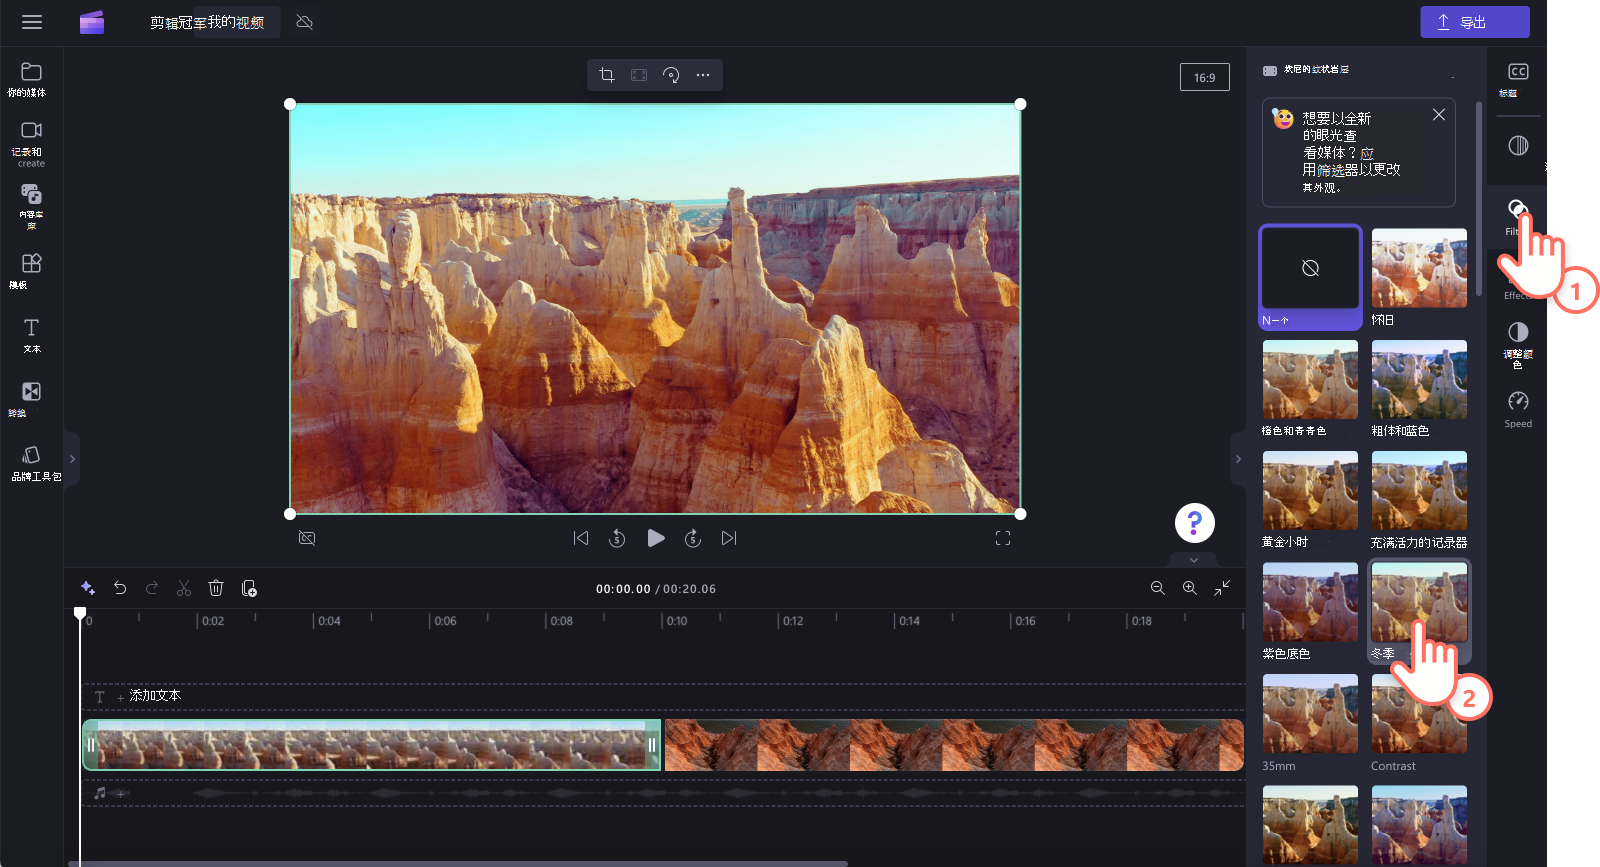 用户向视频添加预设筛选器的图像。